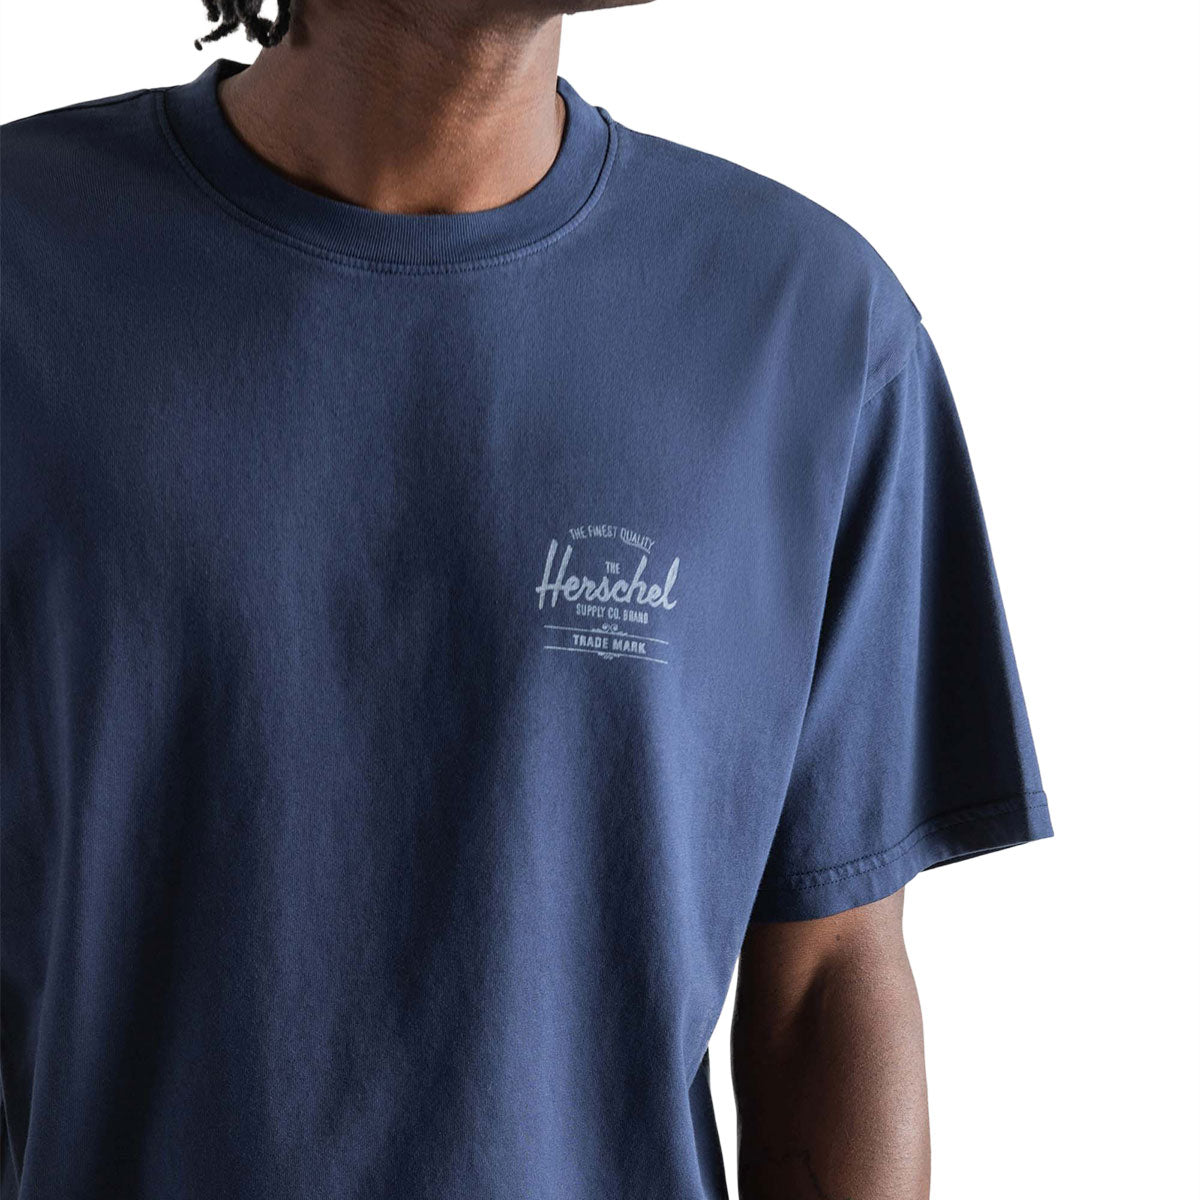 Herschel Supply Basic T-Shirt - Dark Navy/White image 3